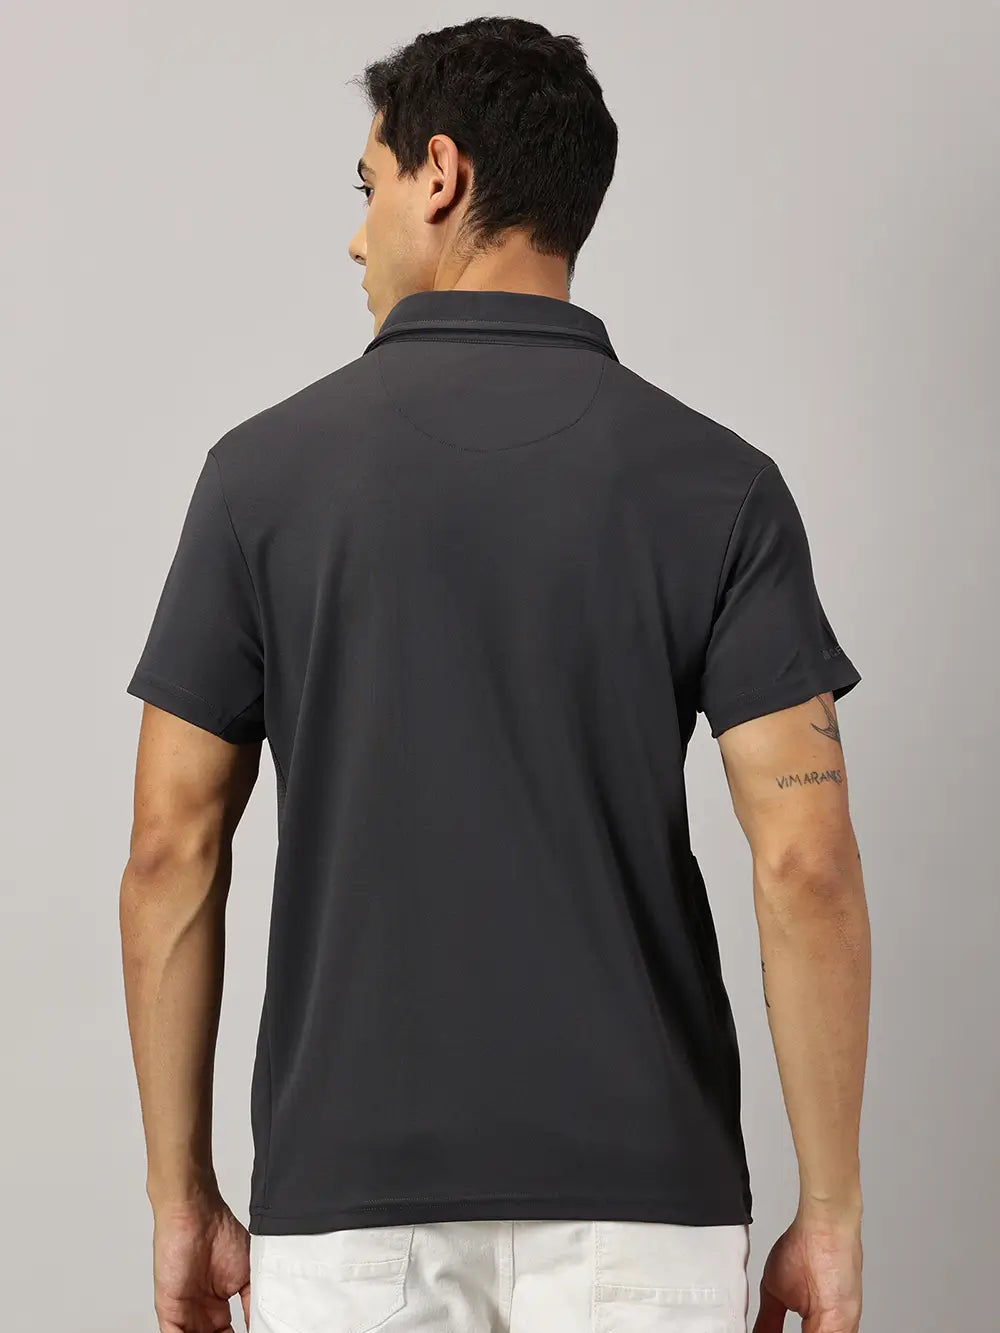 A model wearing Blue Tyga dark grey odor-free polo t-shirt